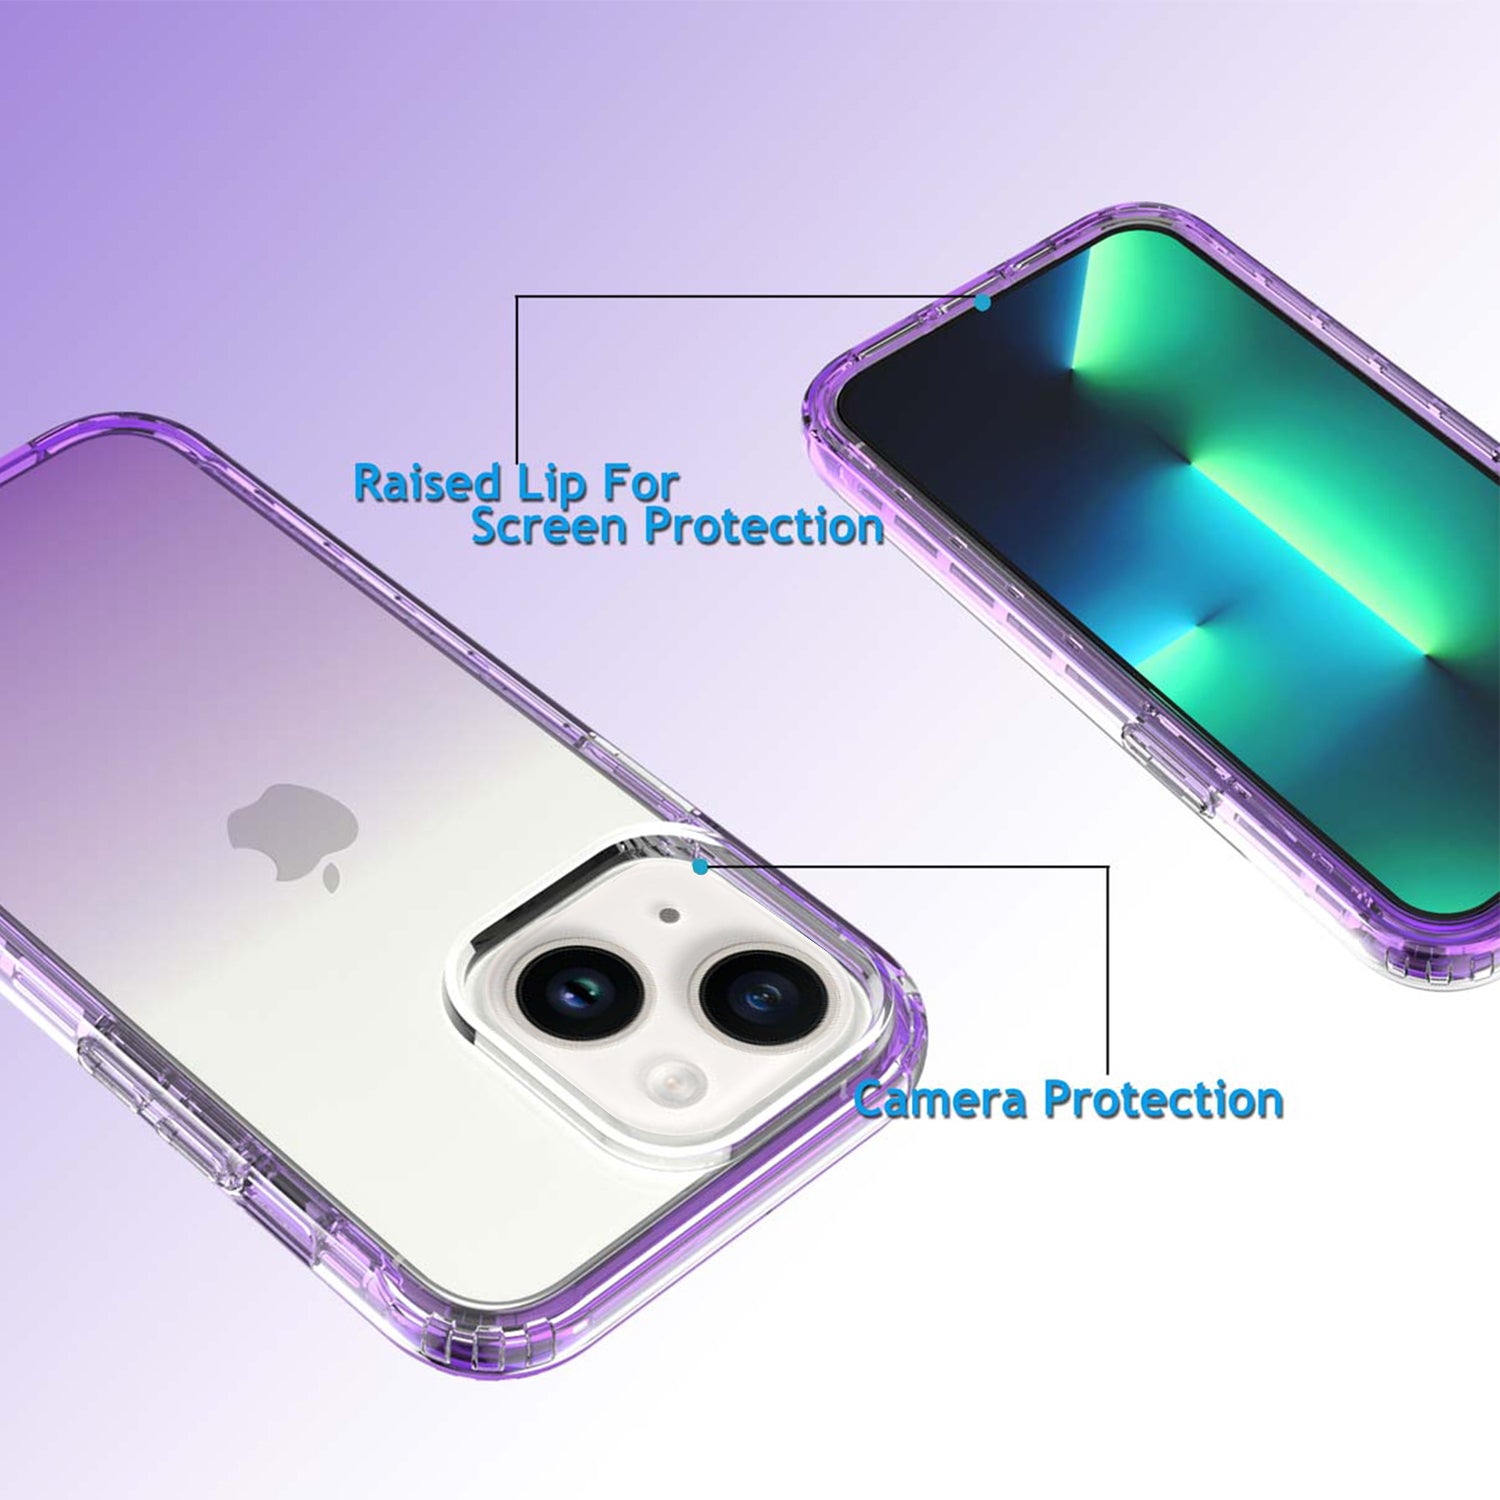 iPhone 14/13 HD gradient transparent  case